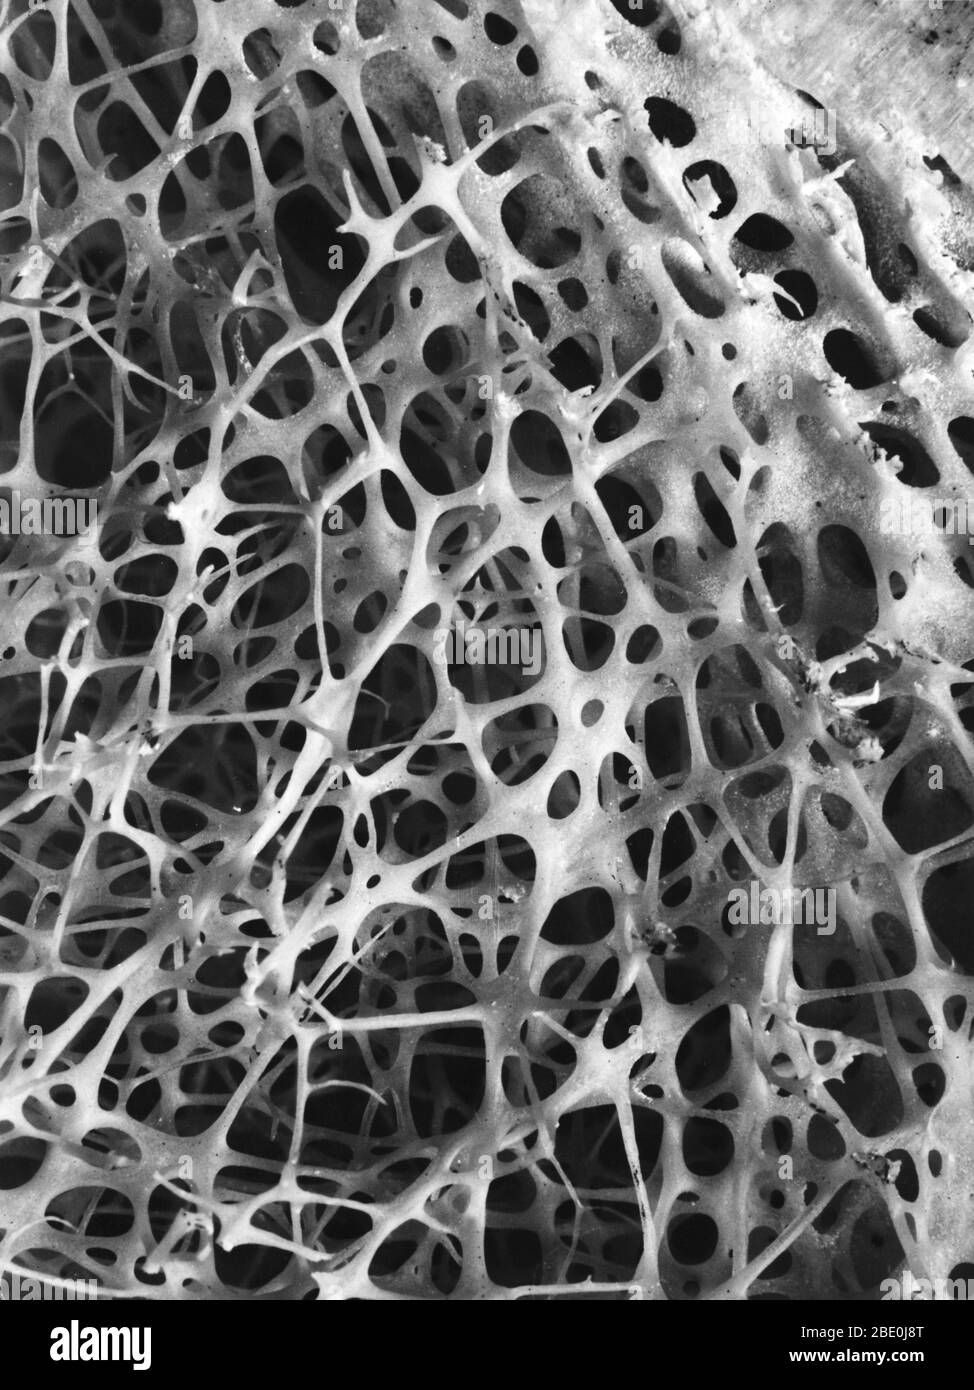 Exploración de micrografía electrónica (SEM) de hueso esponjoso (esponjoso) de la espinilla humana. El tejido óseo es compacto o esponjoso. El hueso compacto suele ser el exterior del hueso, mientras que el hueso esponjoso se encuentra en el interior. El hueso canceroso se caracteriza por una disposición de panal de trabéculas. Estas estructuras ayudan a proporcionar apoyo y fuerza. Los espacios dentro de este tejido normalmente contienen médula ósea, una sustancia que forma sangre. Foto de stock